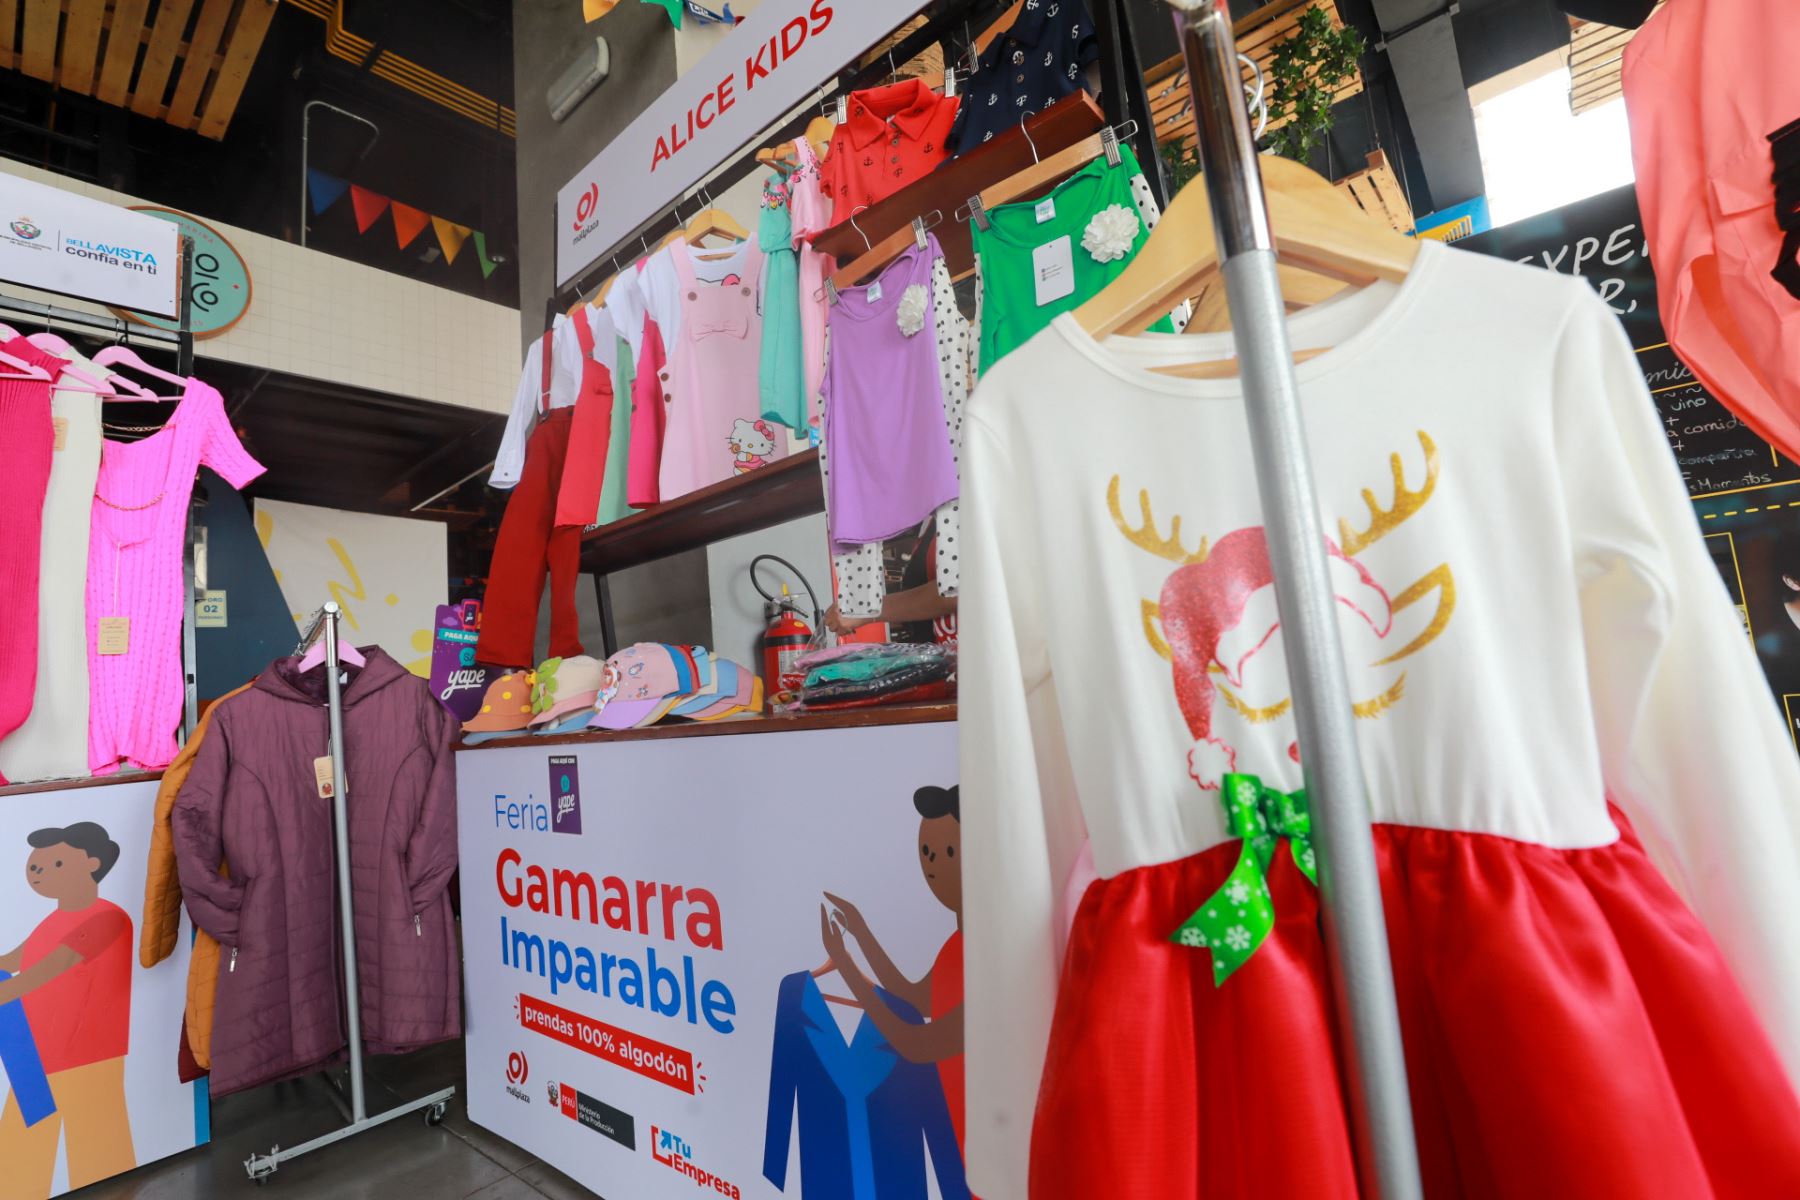 Ferias en Gamarra atrae la atención de los clientes por sus precios.AFP